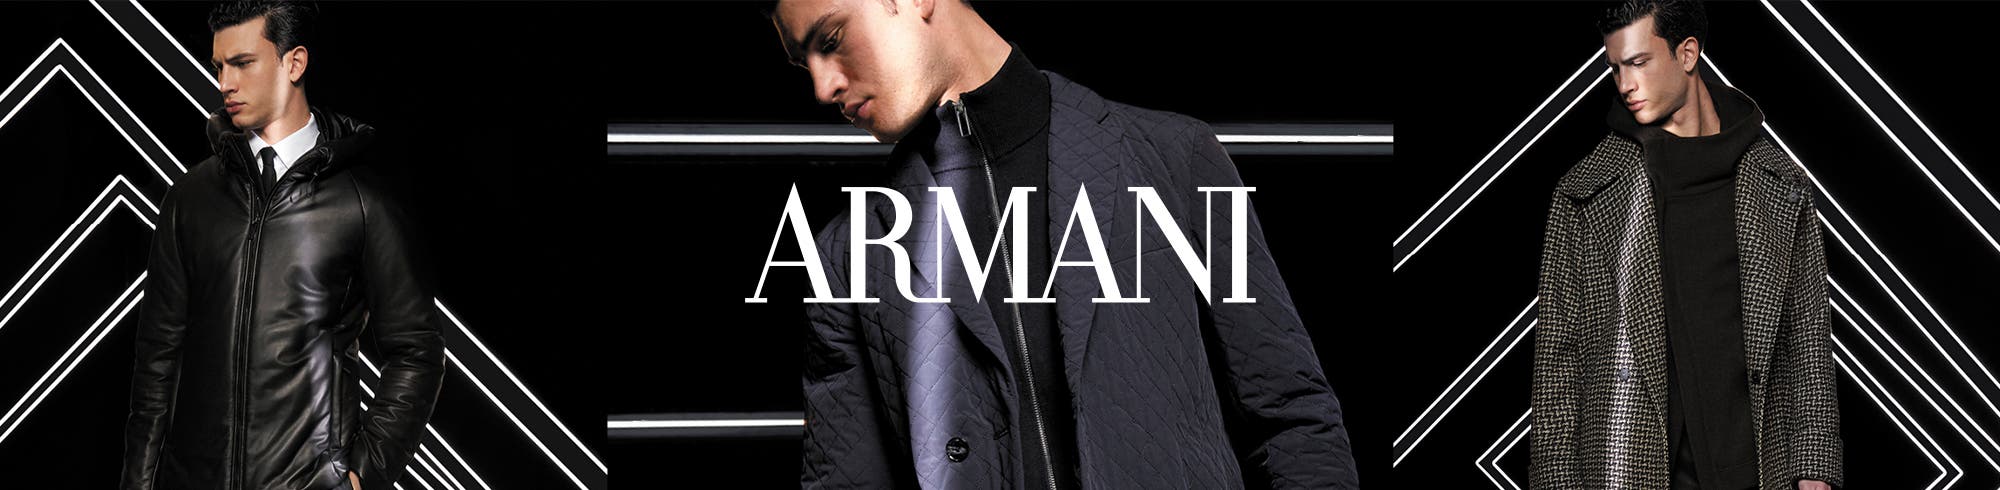 Armani Herren 30-70%* günstiger | Online Shop